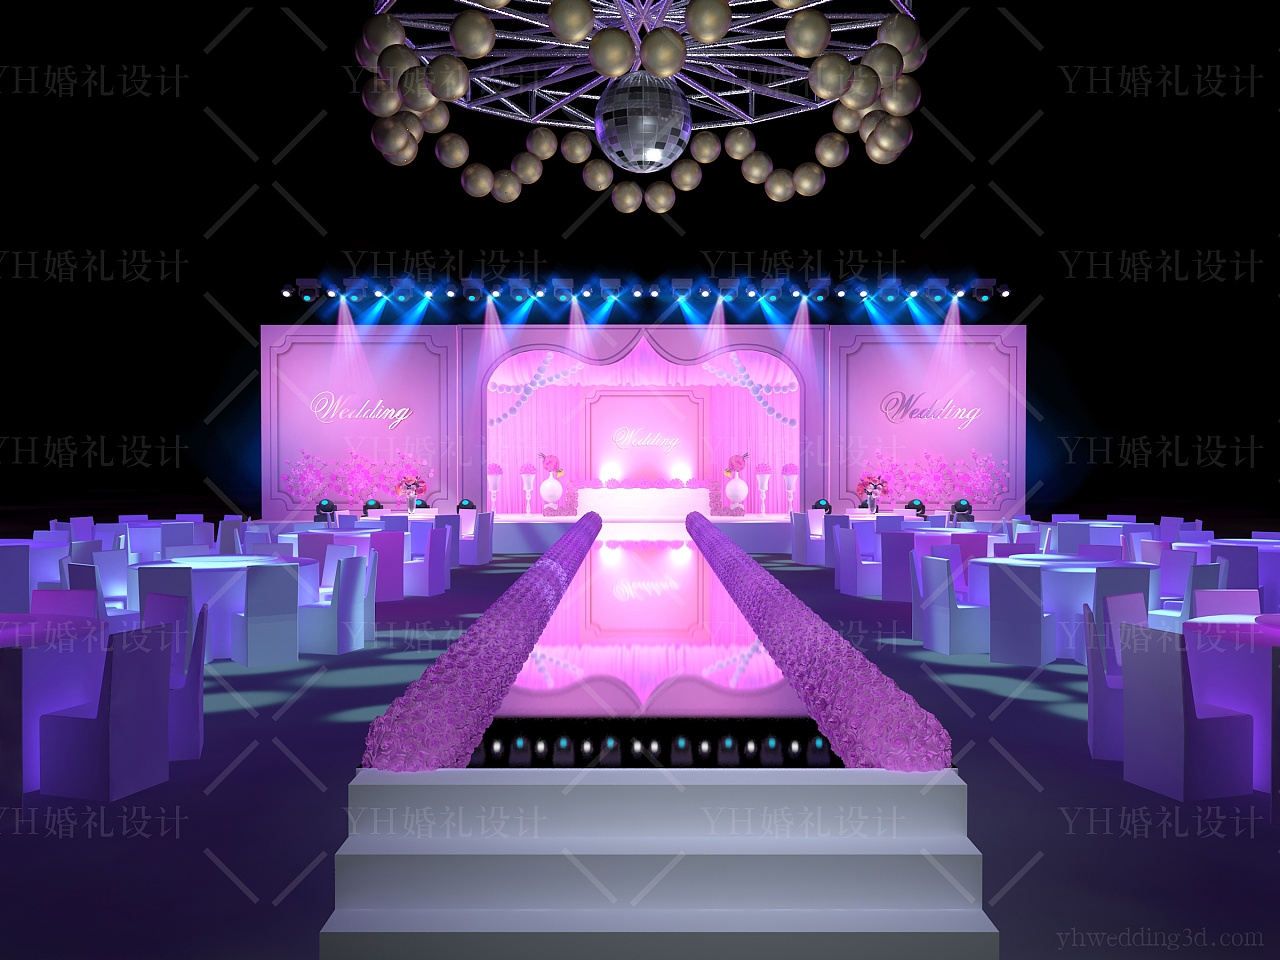 A19紫色罗马薰衣草之恋婚礼舞台背景设计下载-编号15289106-婚礼场景-我图网